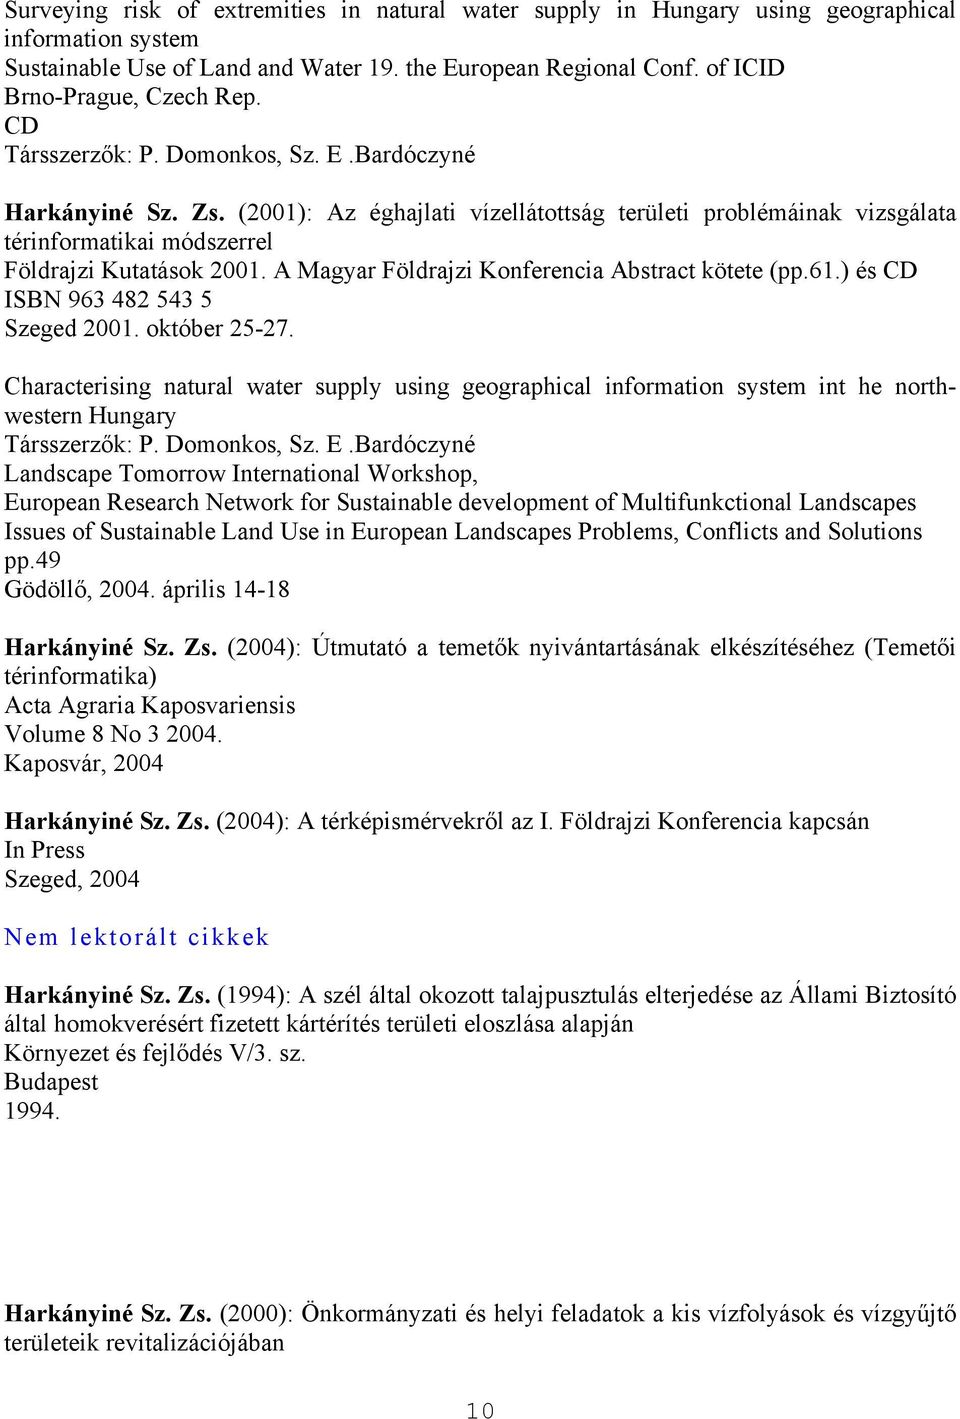 A Magyar Földrajzi Konferencia Abstract kötete (pp.61.) és CD ISBN 963 482 543 5 Szeged 2001. október 25-27.